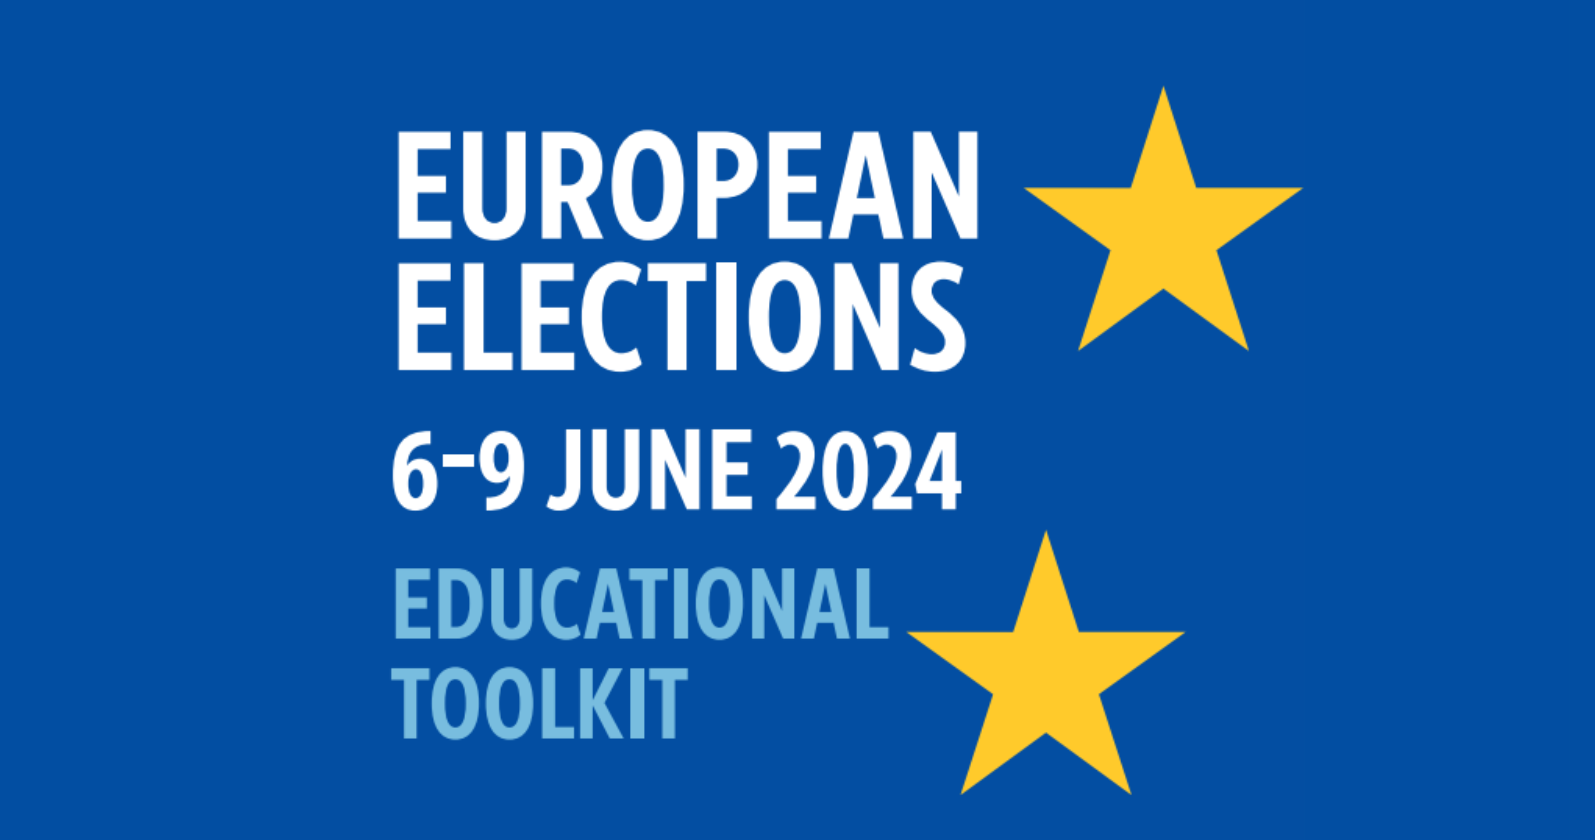 Eu elections toolkit